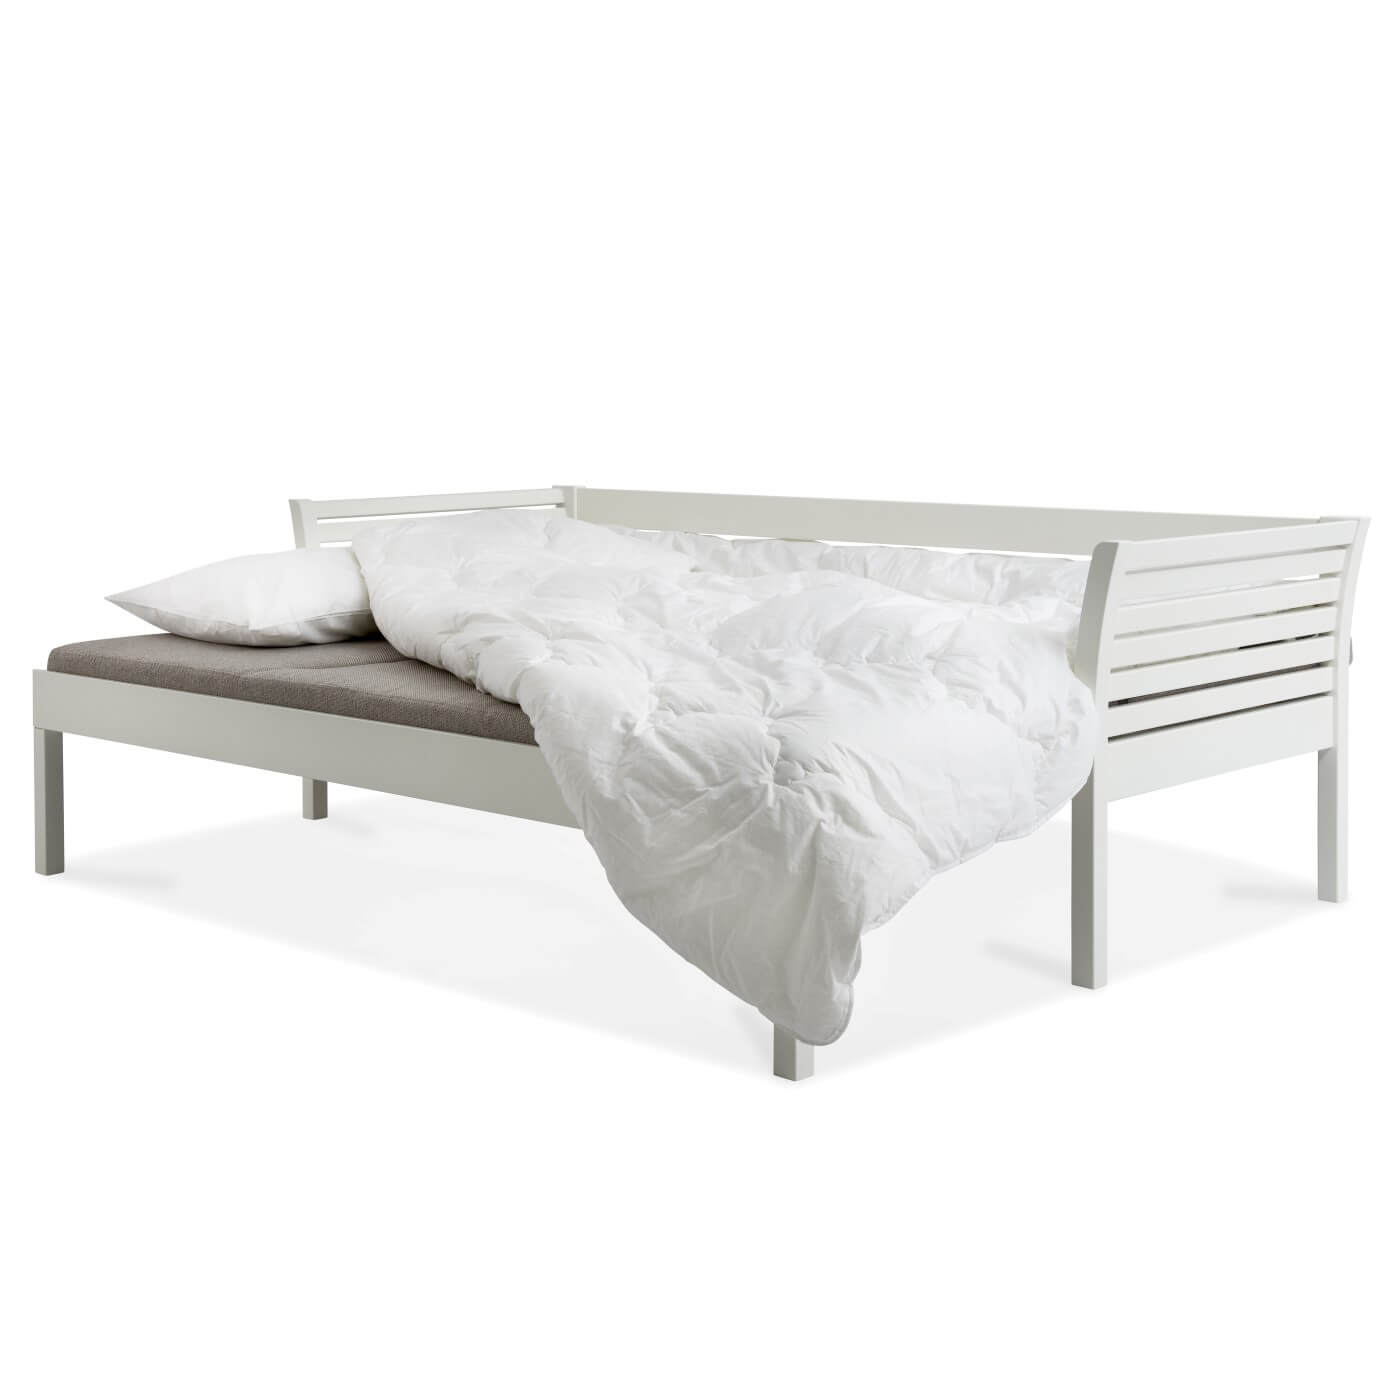 Sofa skandynawska rozkładana KANERVA z drewna w kolorze białym rozłożona. Leżąca pościel na beżowym materacu